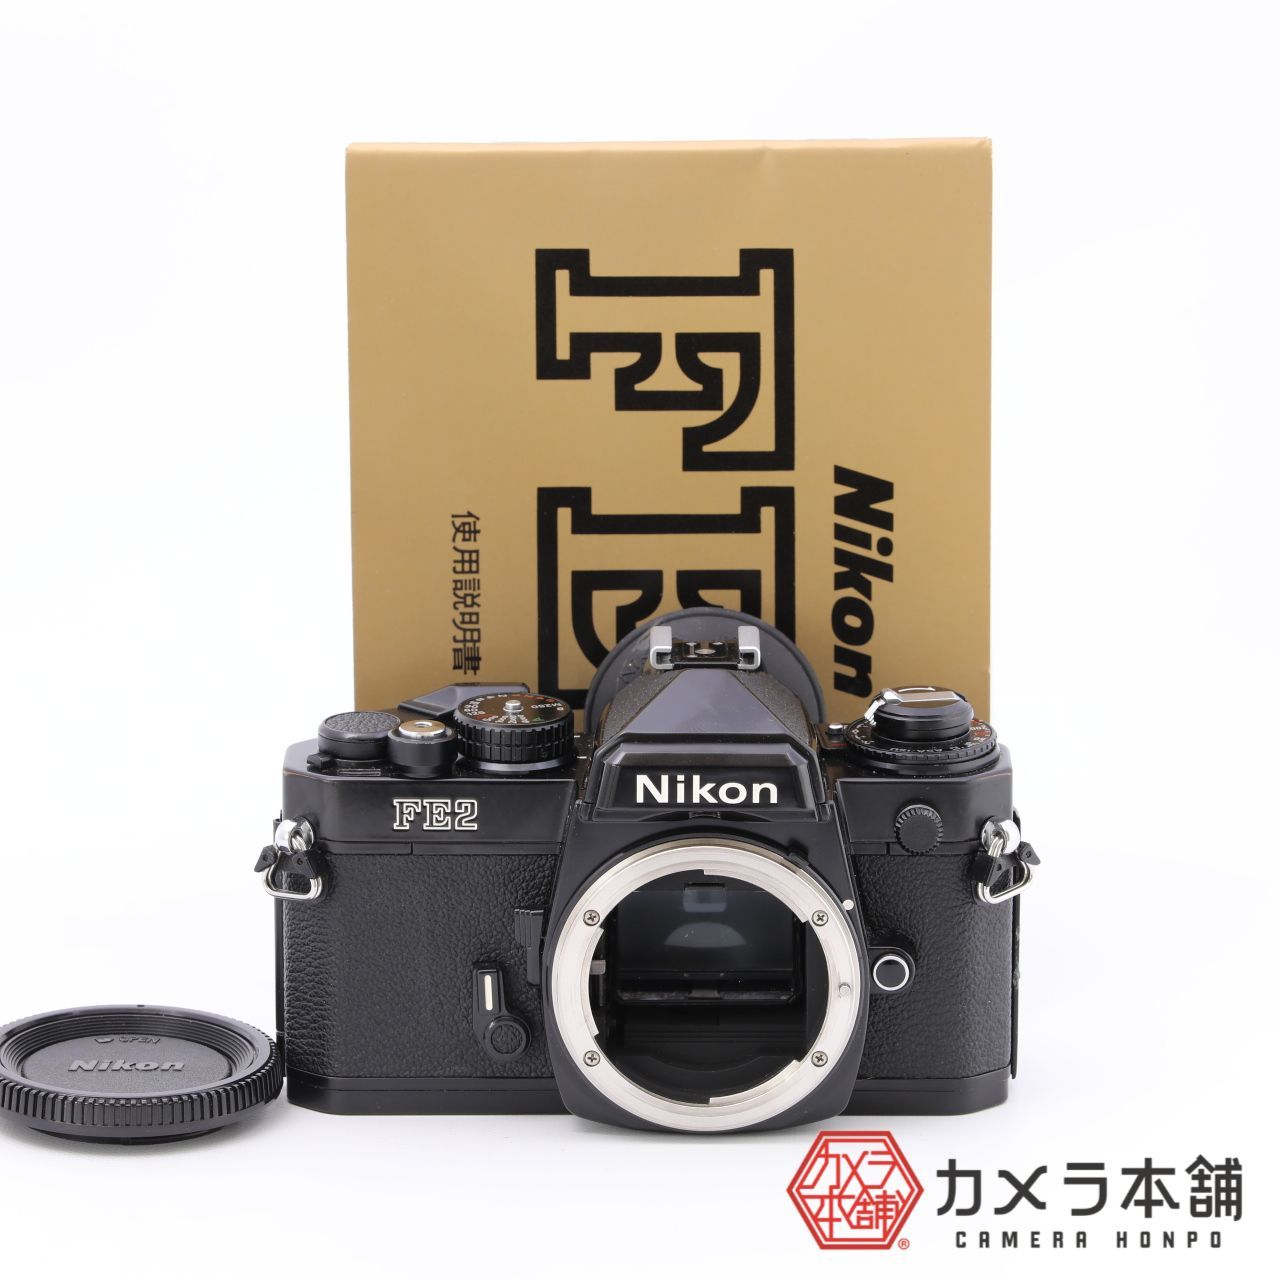 Nikon ニコン FE2 ブラック ボディ フィルム一眼レフ - メルカリ